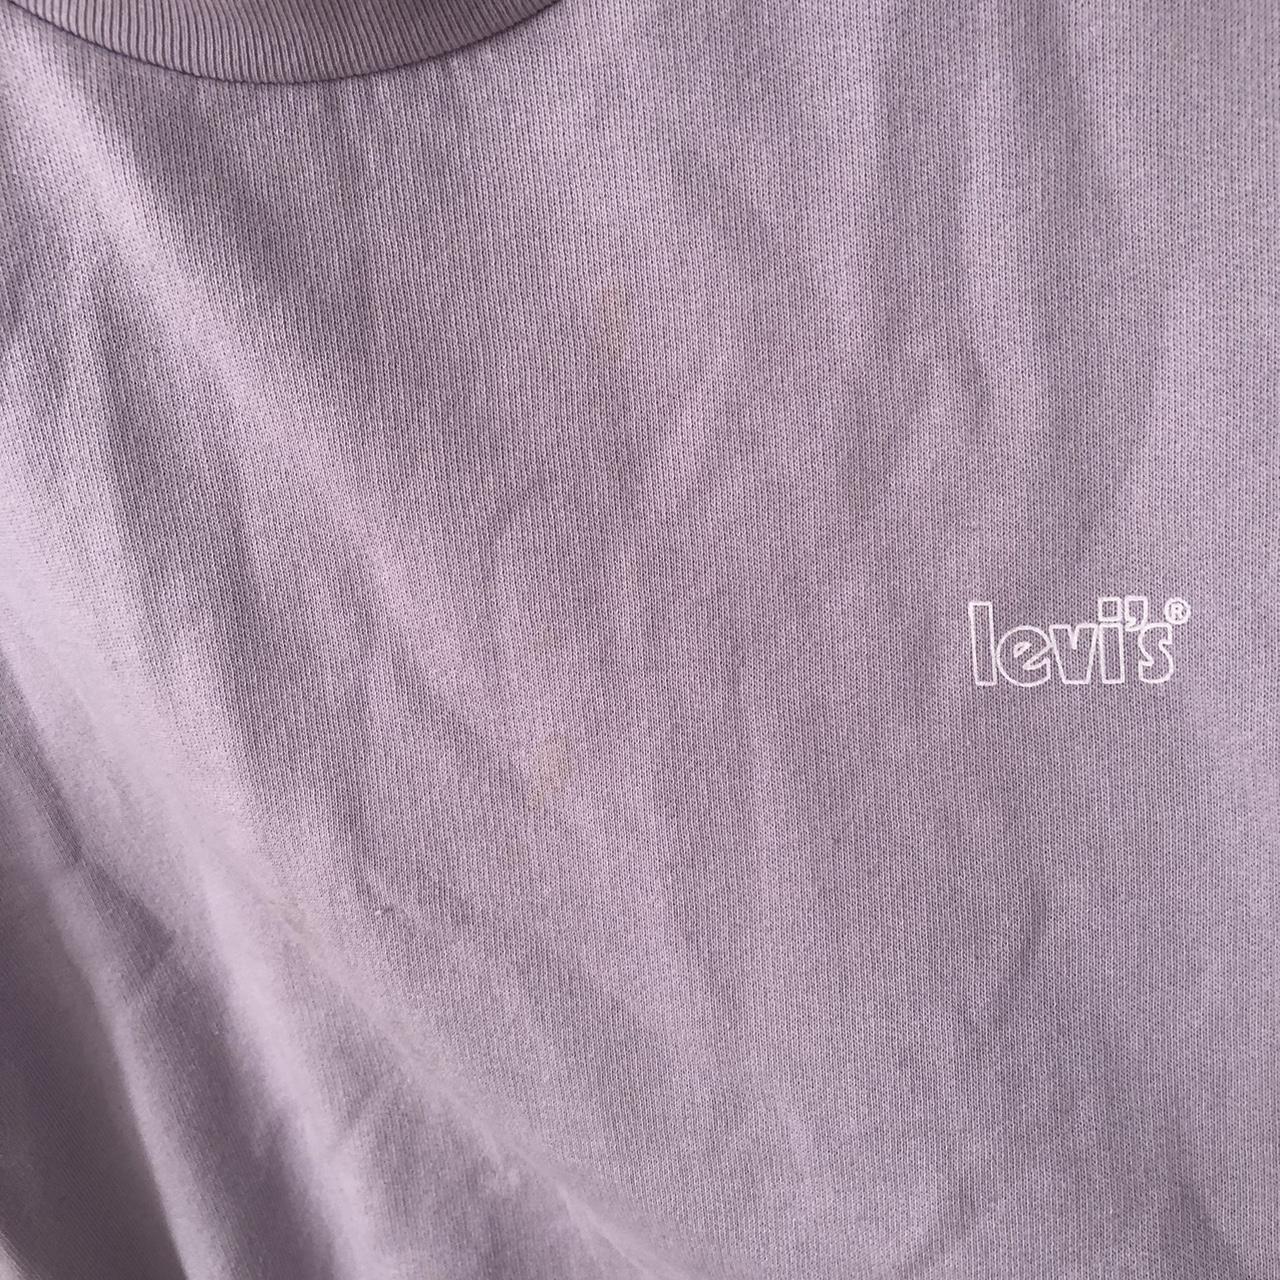 Levi’s cropped jumper, lilac colour. Size XXL Has a... - Depop